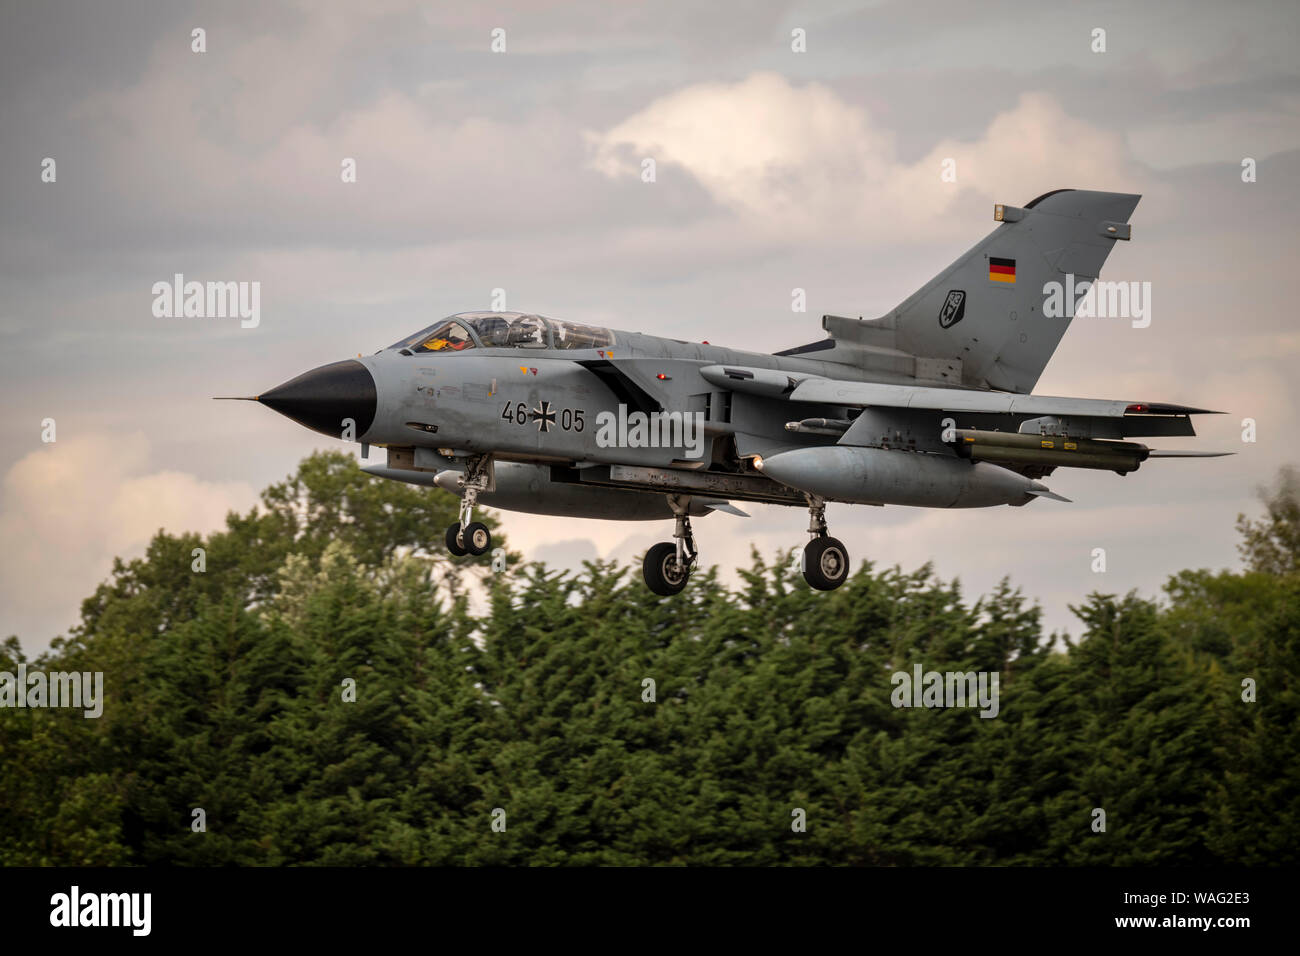 German Air Force Tornado at the Royal International Air Tattoo 2019 Stock Photo